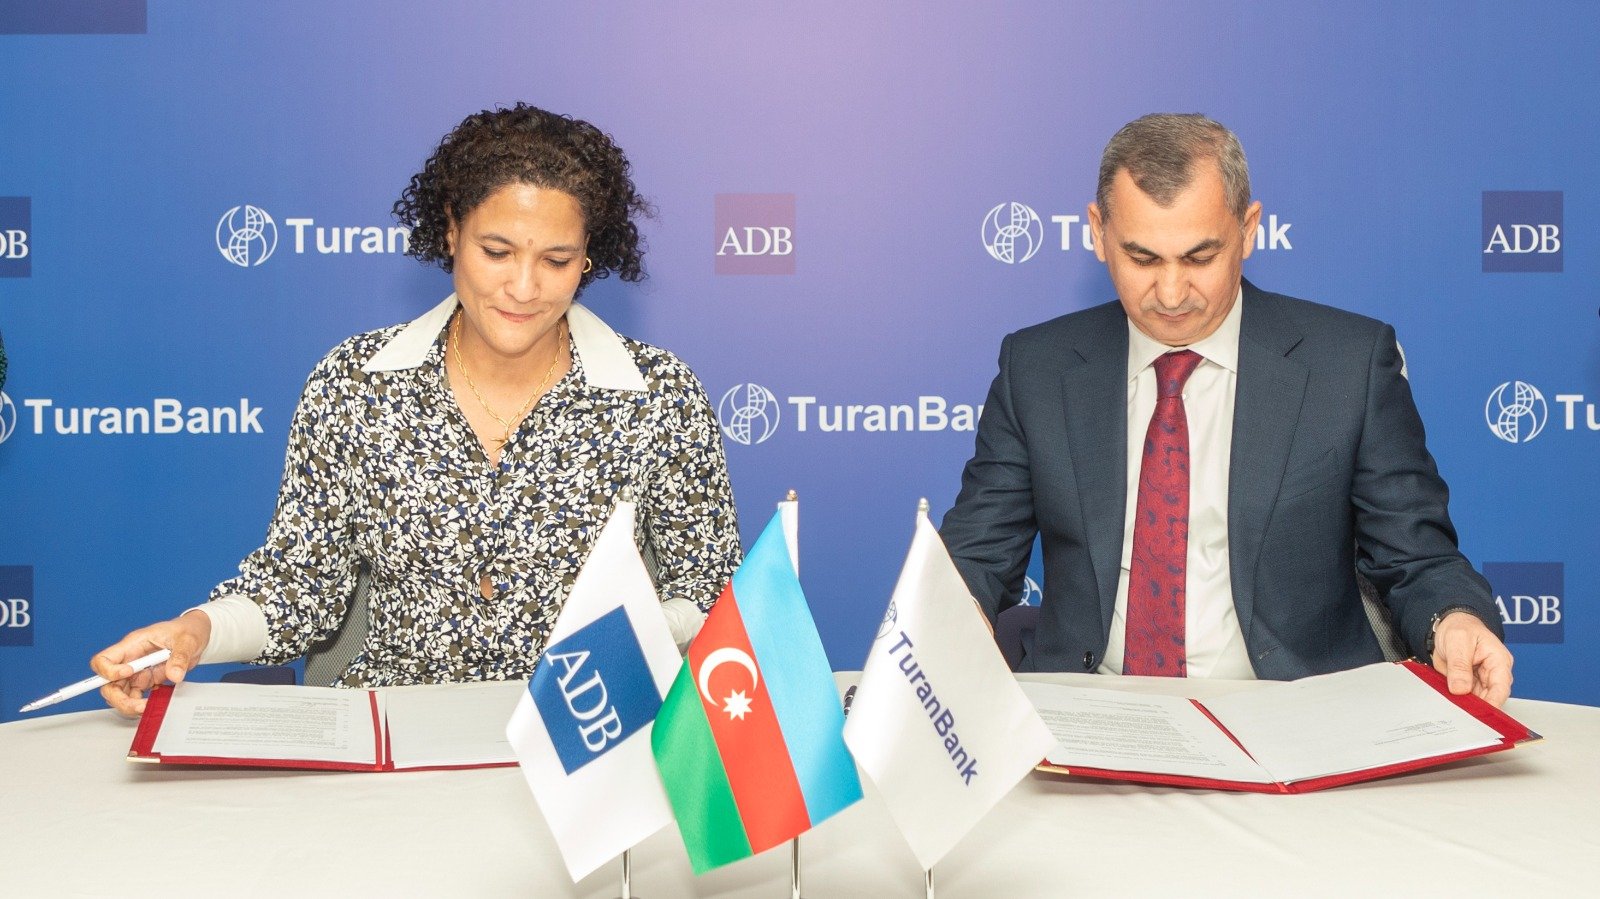 ТуранБанк ОАО и Азиатский Банк Развития заключили соглашение о торговом финансировании (ФОТО)